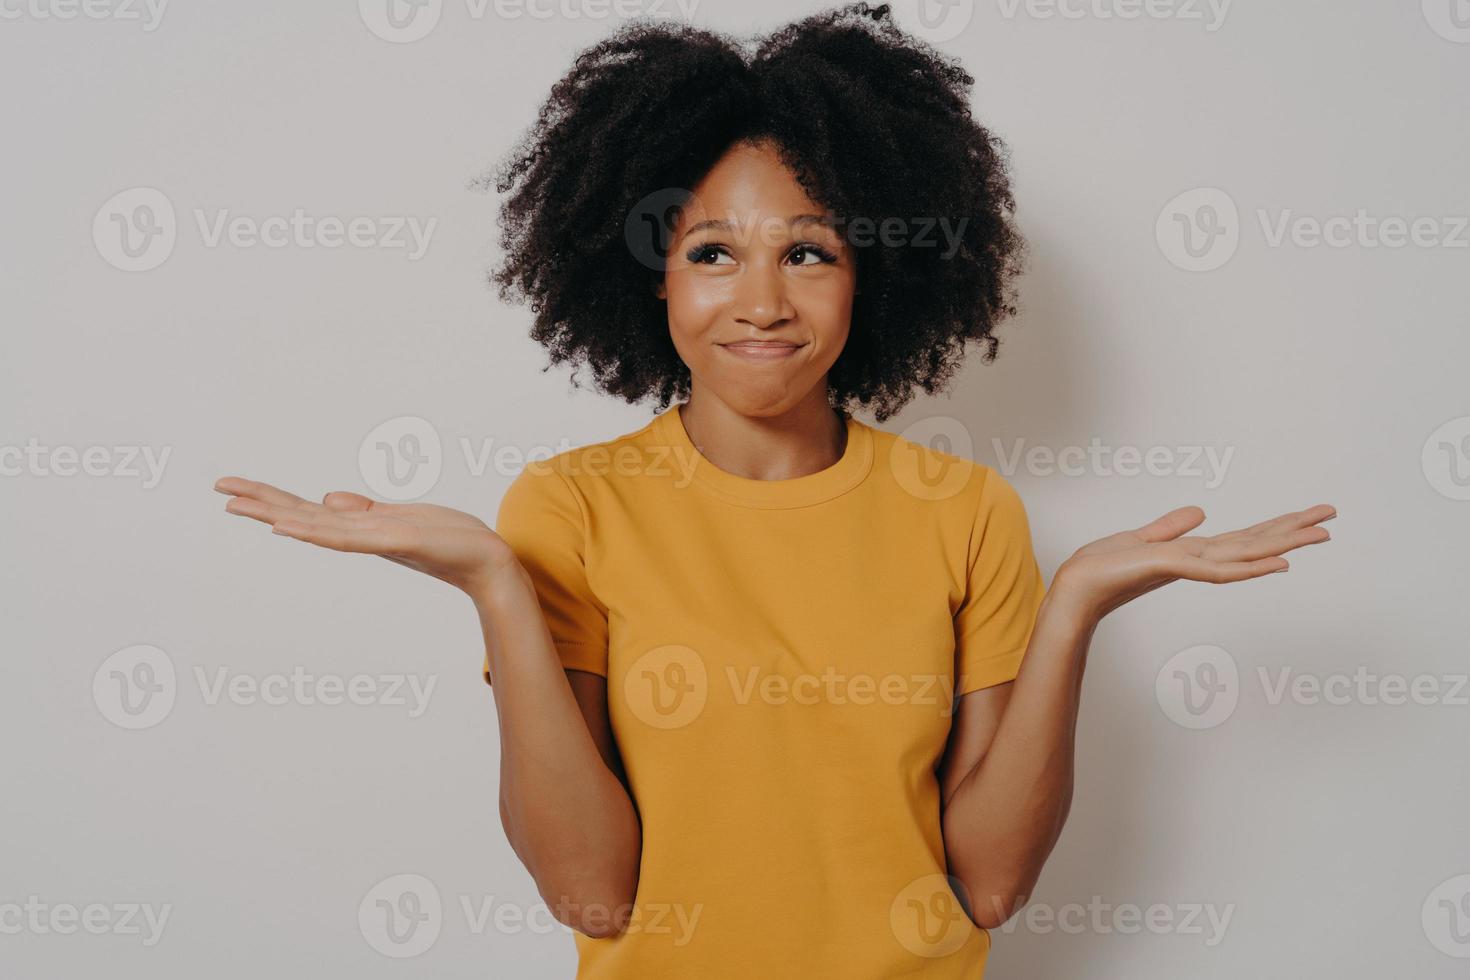 junge afrikanische frau, die mit ahnungslosem und lustigem verwirrtem ausdruck mit erhobenen armen und händen steht foto